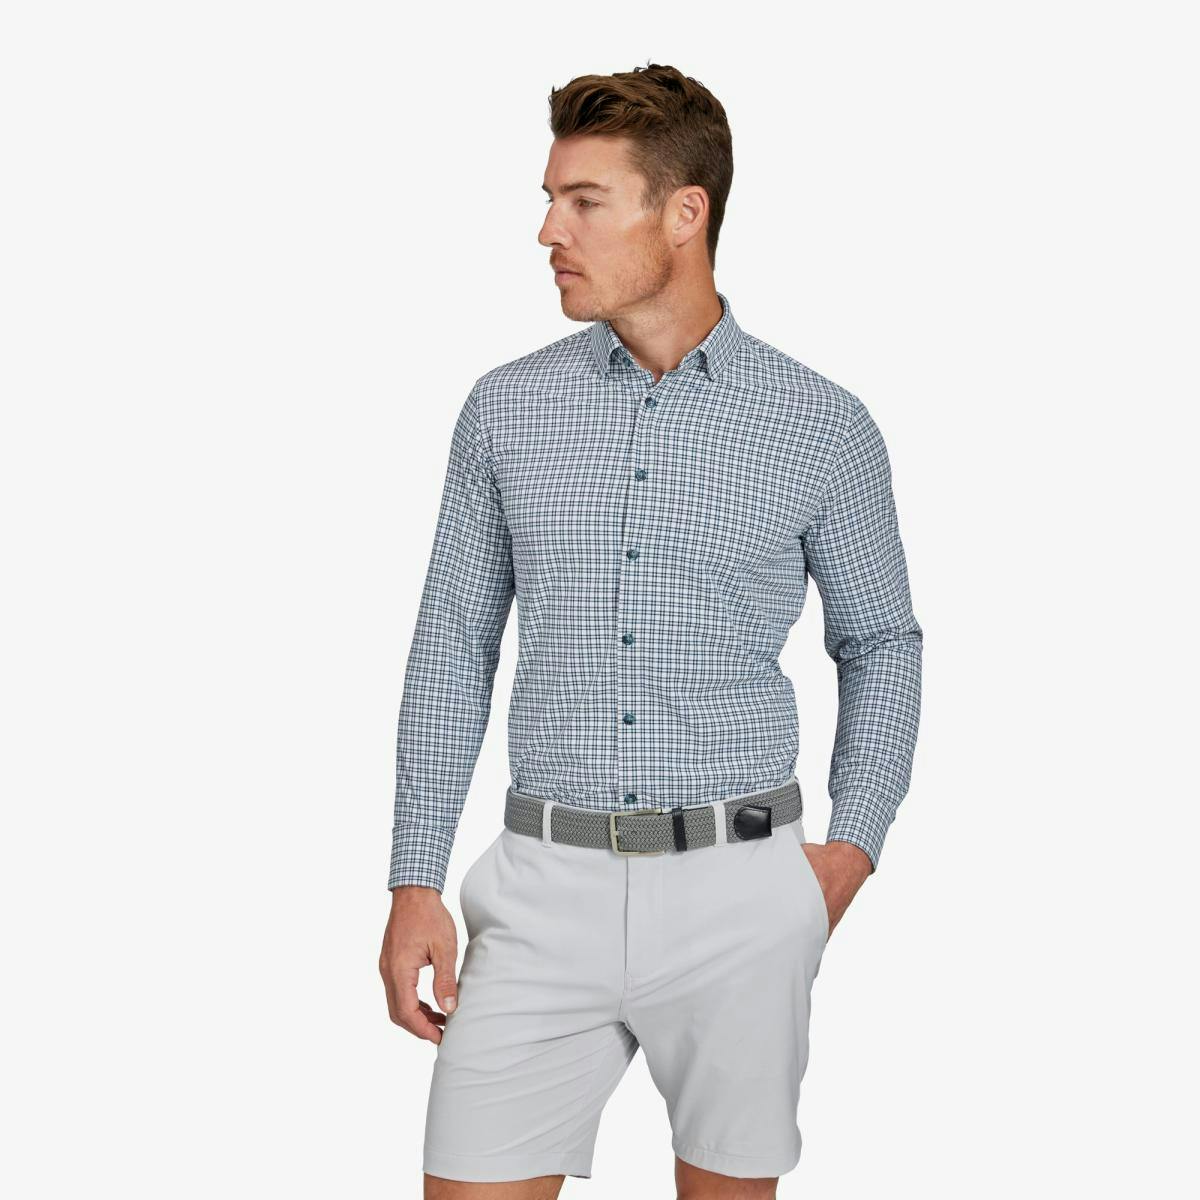 Monaco Dress Shirt - Product Image 1